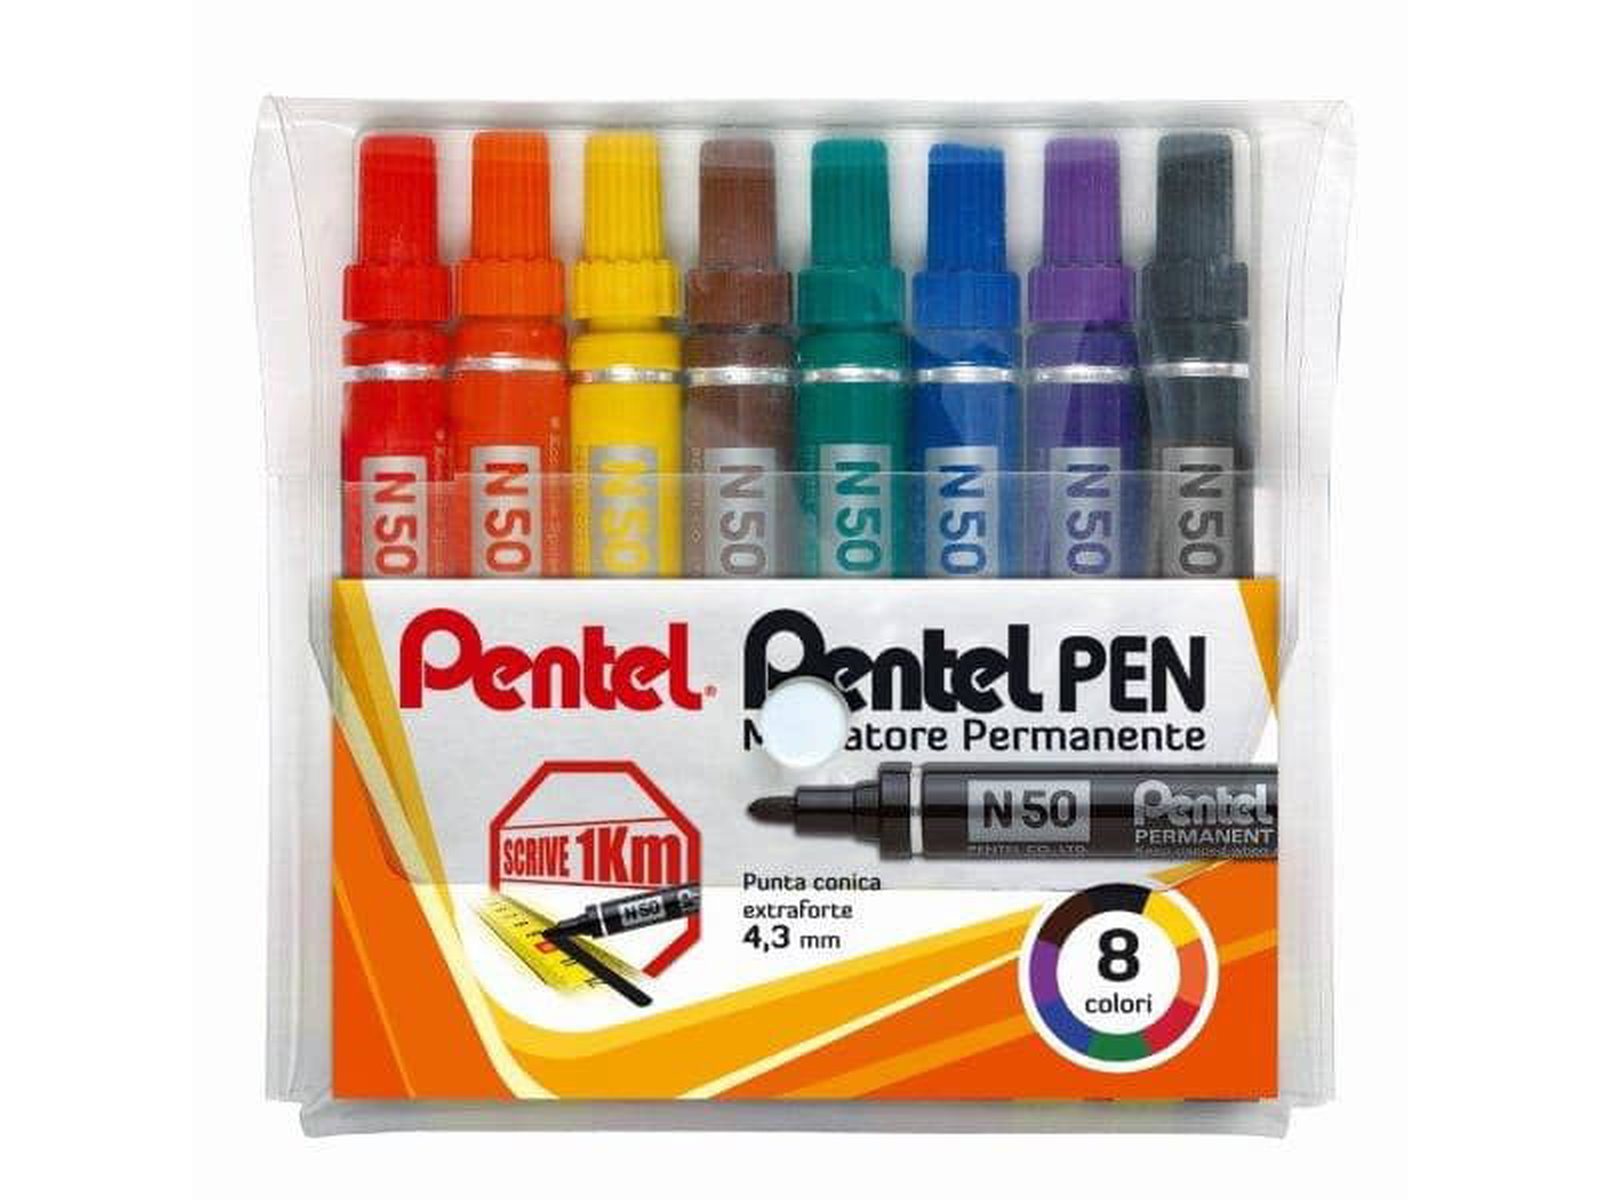 Marcatore permanente Pentel Pen N50 punta conica 4.3 mm assortiti 8 pezzi -  N50-8 a soli 14.05 € su